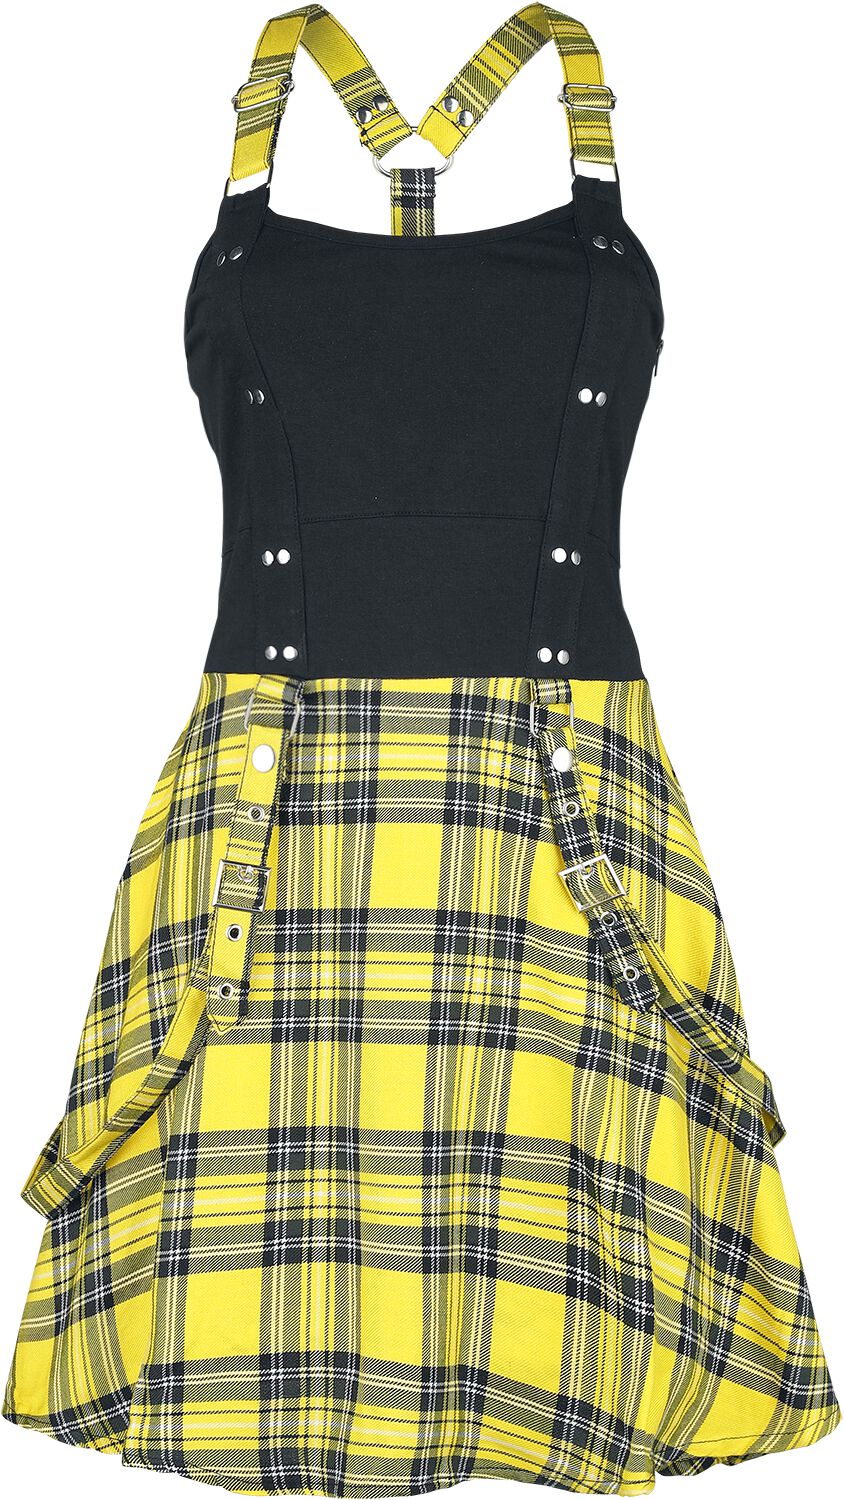 Heartless Kurzes Kleid - Incantation Dress - XS bis 4XL - für Damen - Größe XL - schwarz/gelb